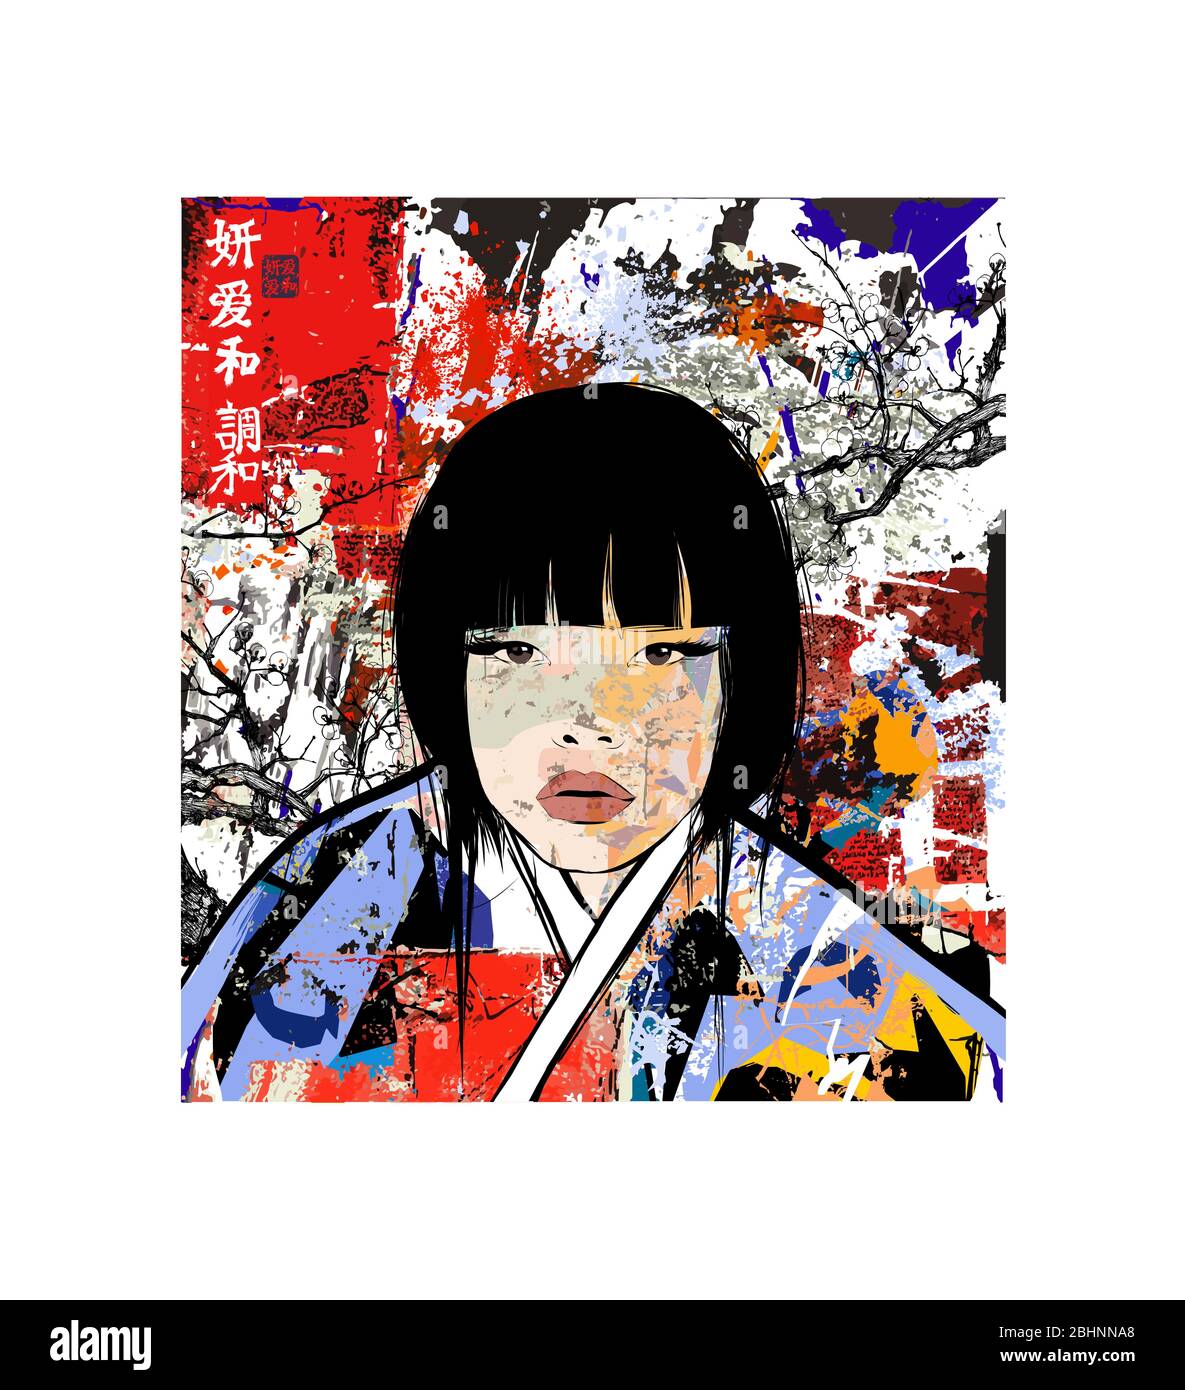 Giovane giapponese in kimono tradizionale - illustrazione vettoriale - caratteri giapponesi significato: Bellezza, Amore ; Pace ; armonia – stessi personaggi in Illustrazione Vettoriale